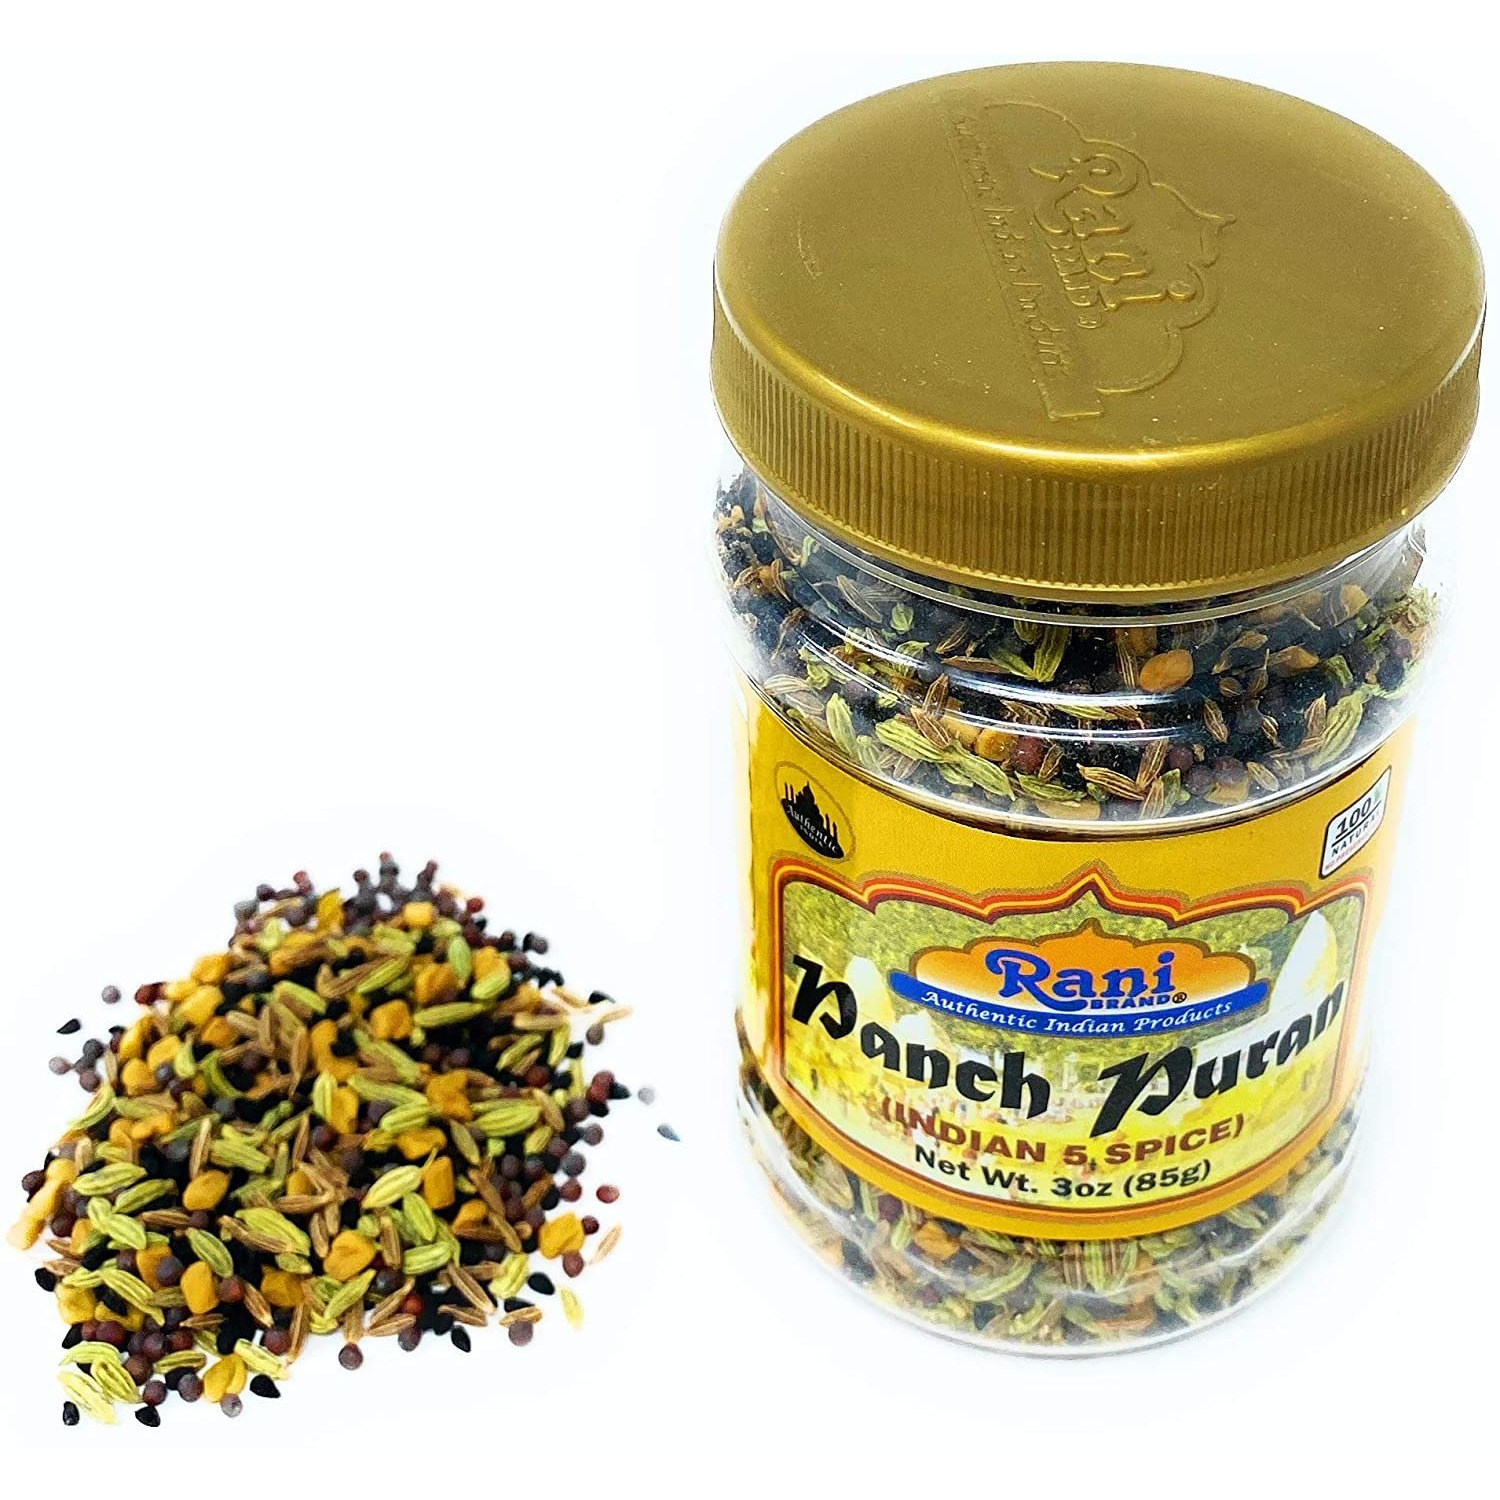 Rani Panch Puran (5 Spice) 3oz